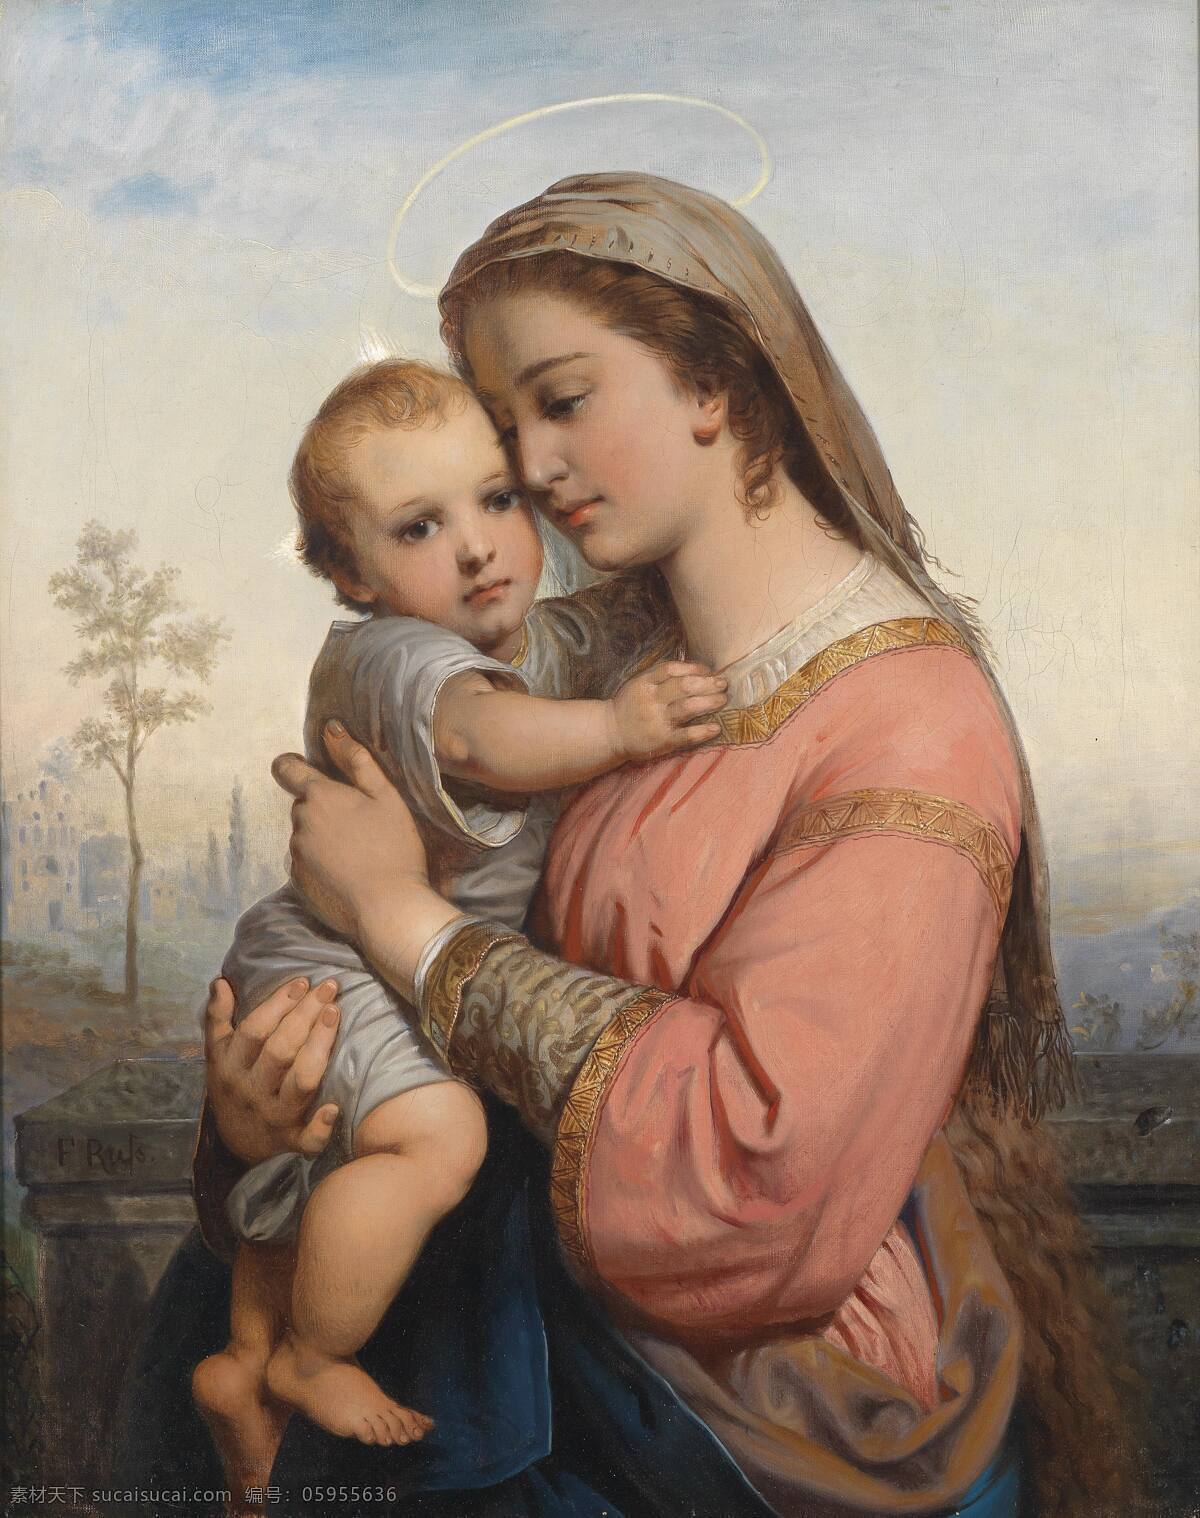 圣婴与圣母 圣母玛丽娅 耶稣 基督教 宗教 19世纪油画 母子情 母与子 绘画书法 文化艺术